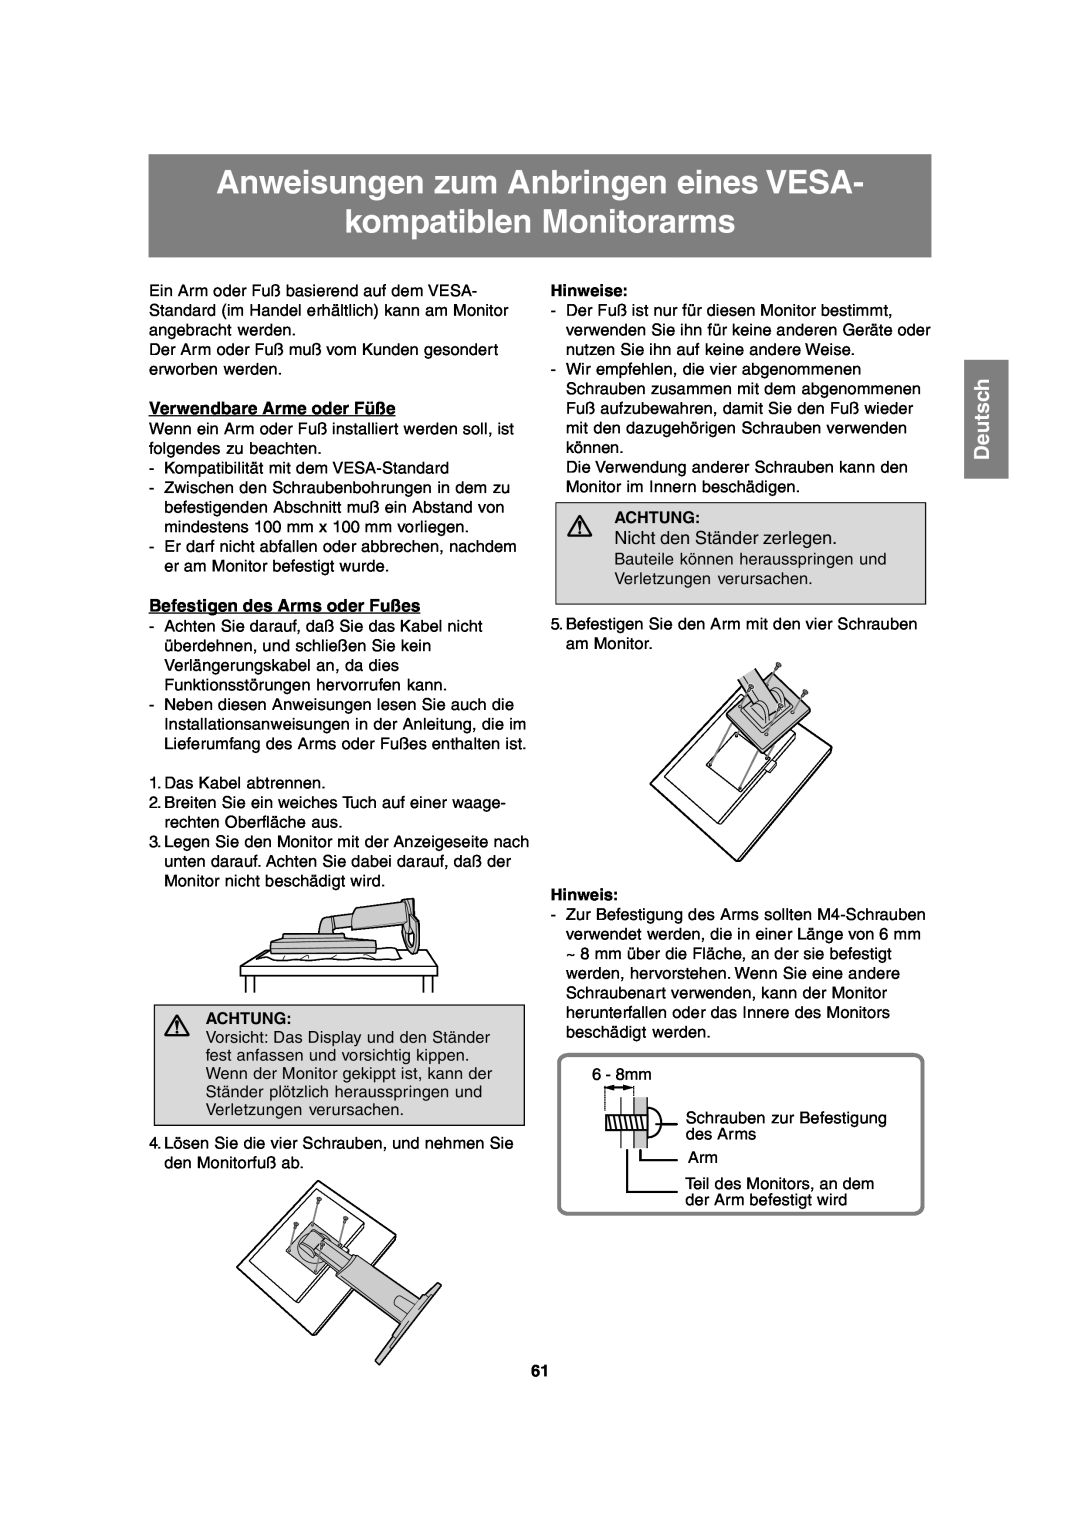 Sharp LL-T2020 Anweisungen zum Anbringen eines VESA kompatiblen Monitorarms, Verwendbare Arme oder Füße, Deutsch, Achtung 